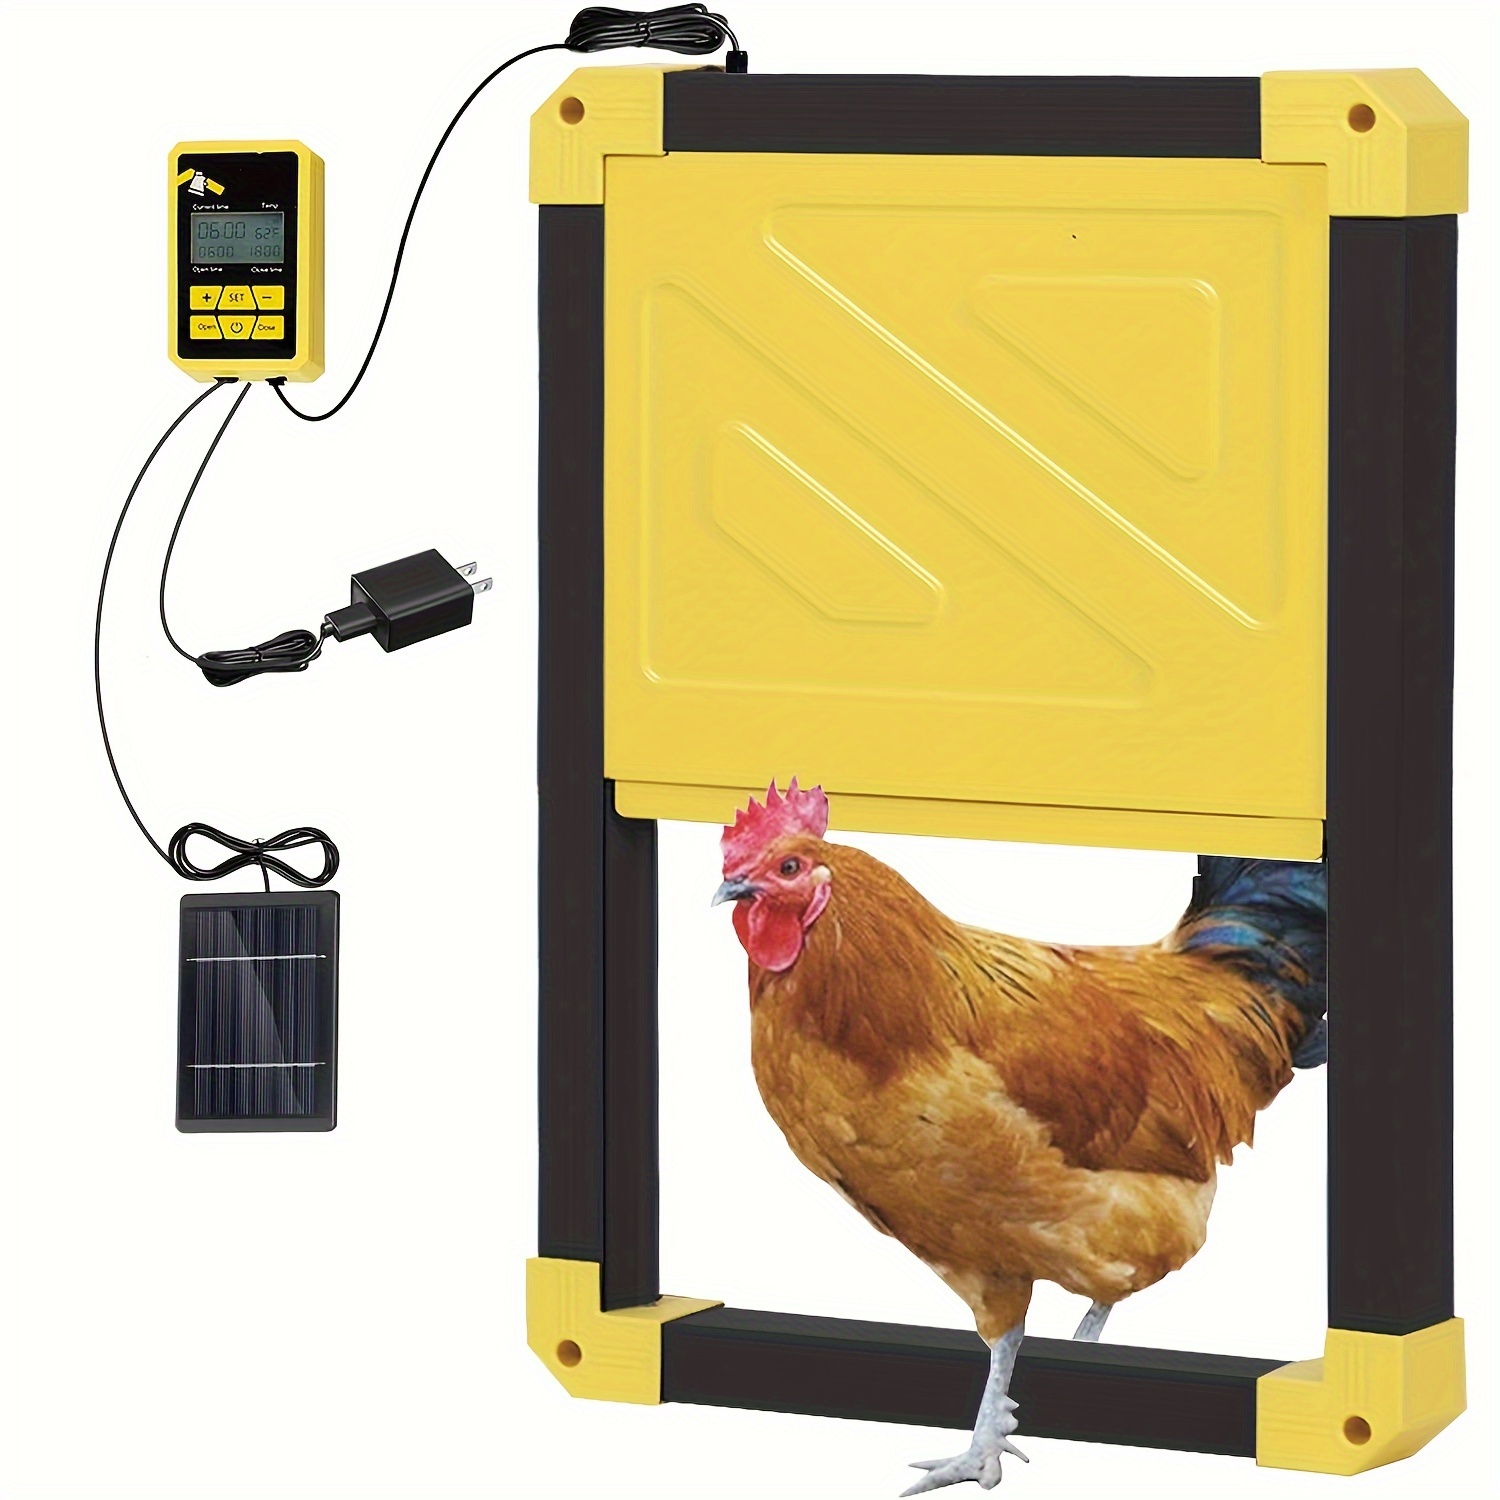 

Aivituvin Automatic Chicken Coop Door Solar Powered, Auto Chicken Door Opener For Chicken House Or Duck Run